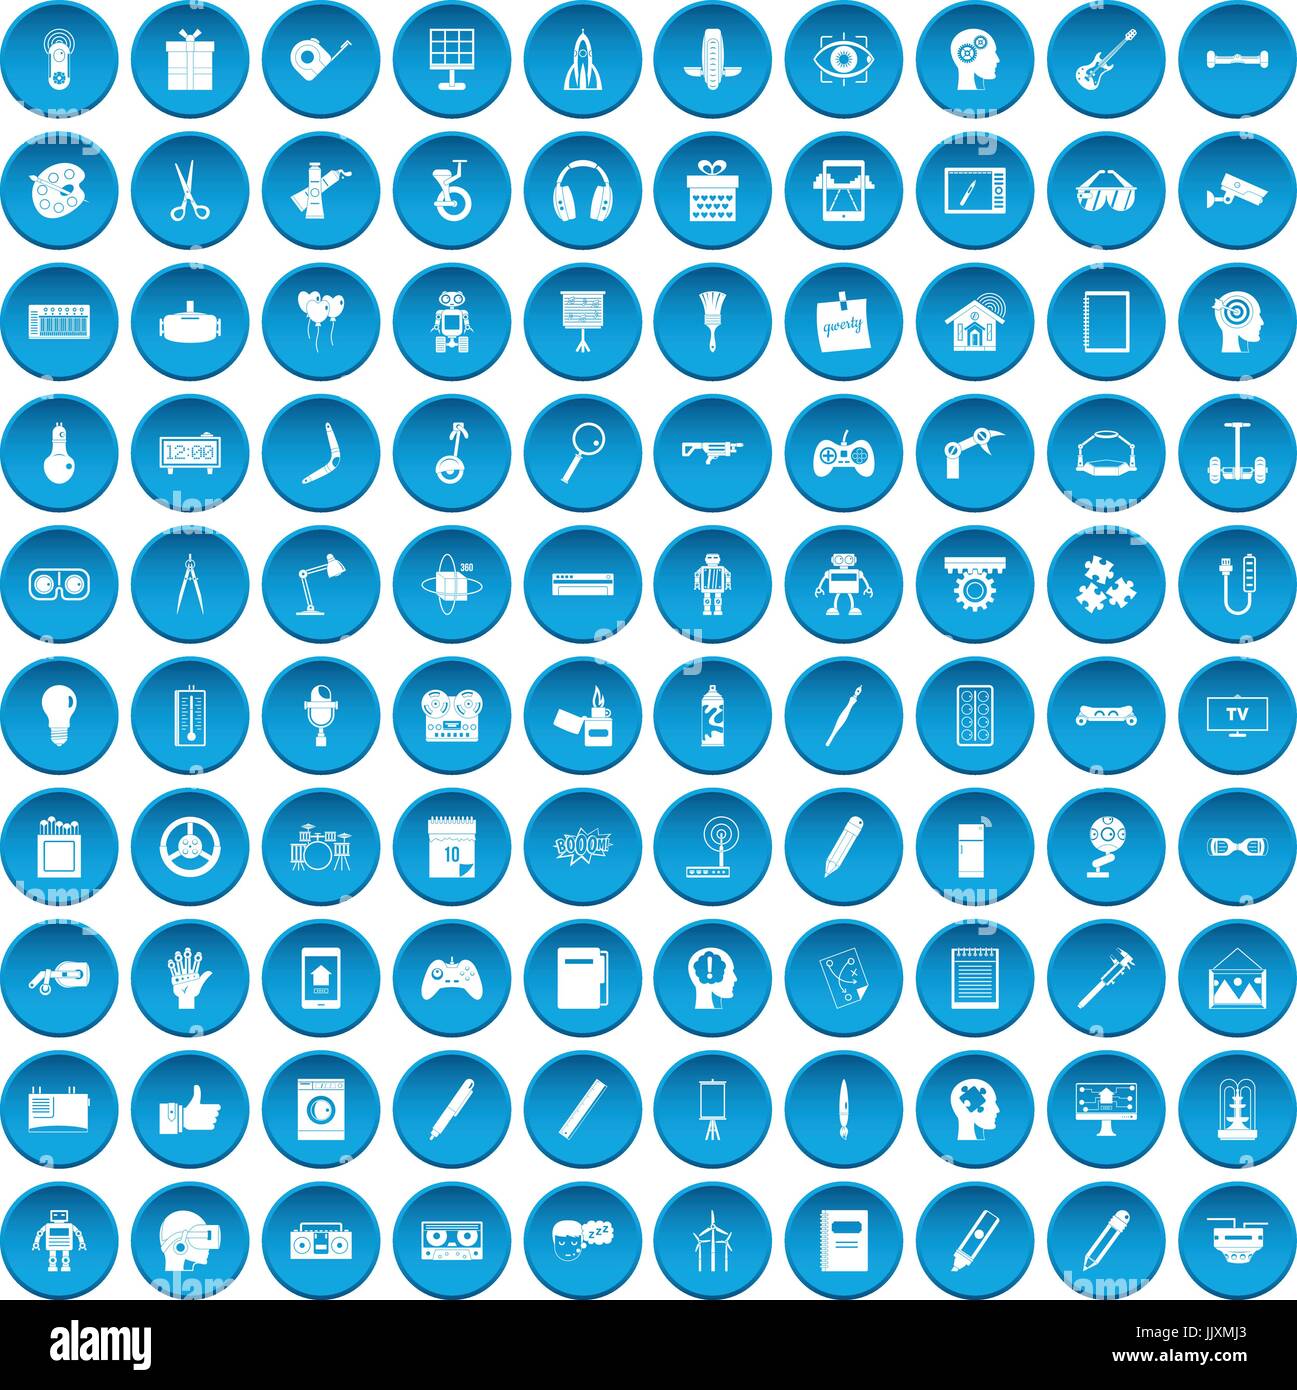 100 kreative Idee Icons set blau Stock Vektor